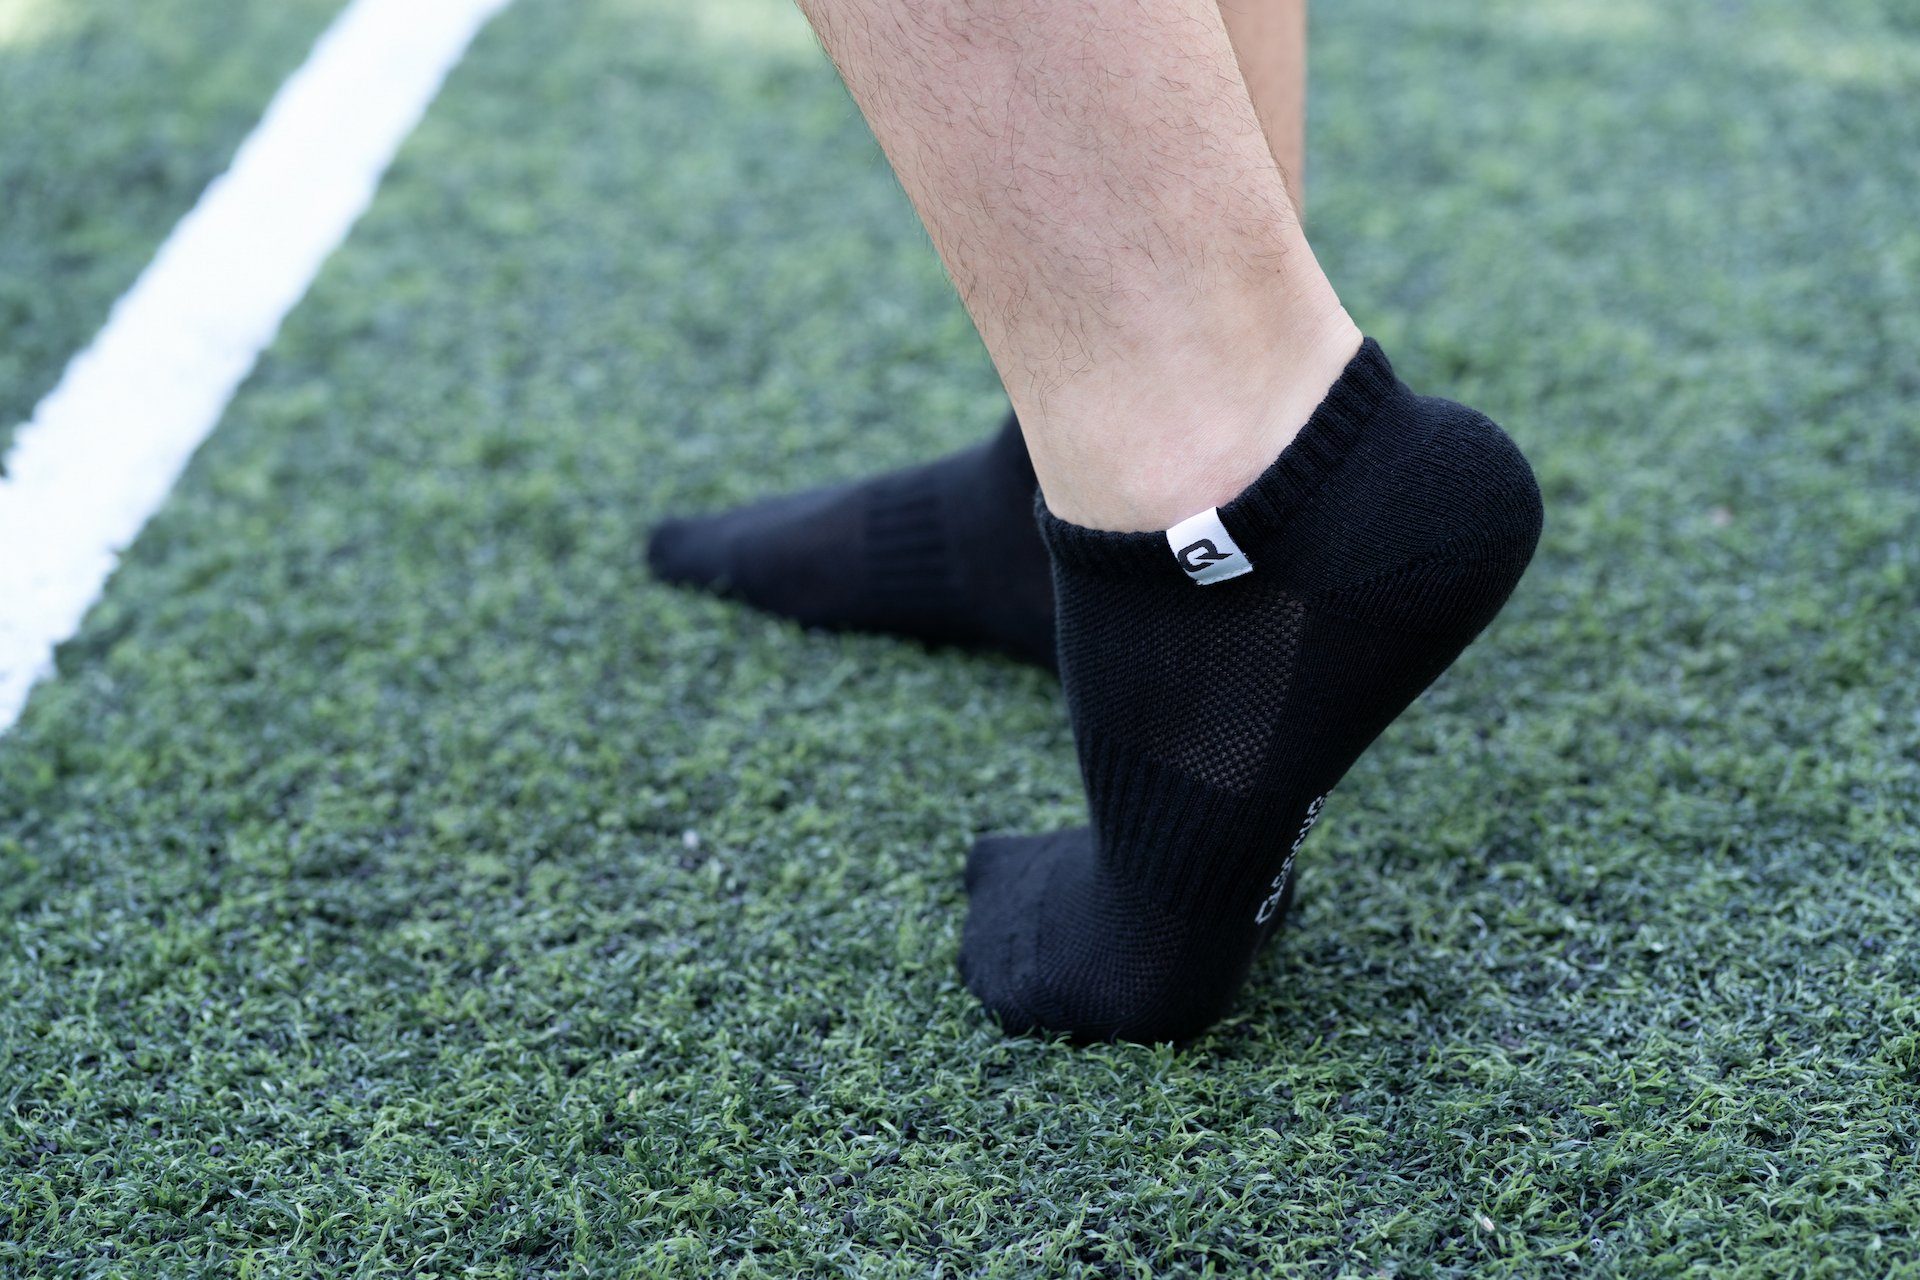 QSOCKS Sneakersocken und & (Packung, 6 Herren gepolsterte Paar) Qualität Damen Socken Zehen für Sohle Grau Baumwolle Hochwertige